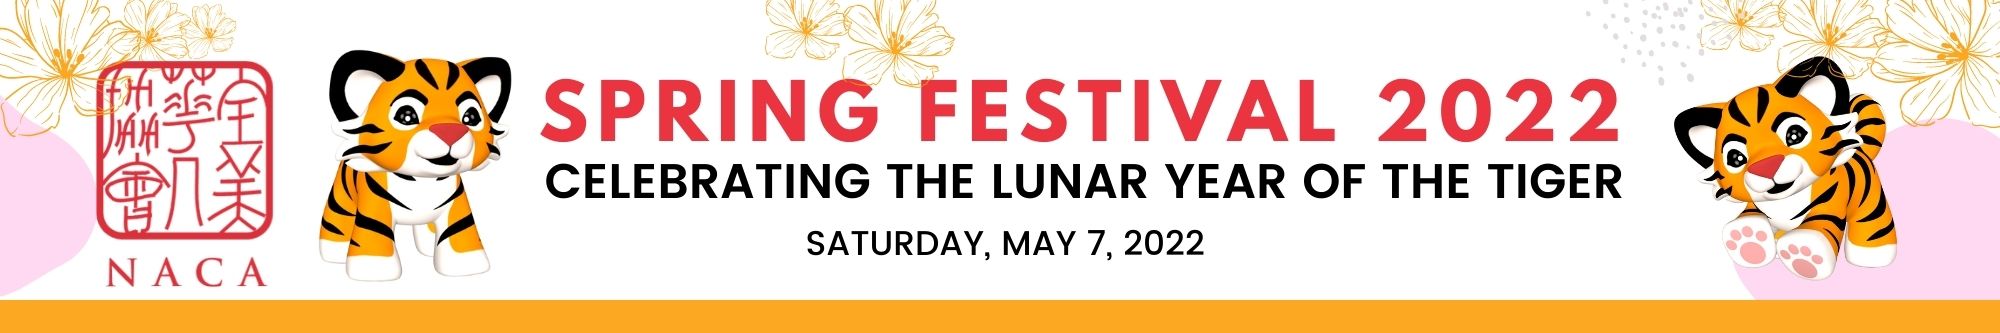 LONG Spring Festival 2022